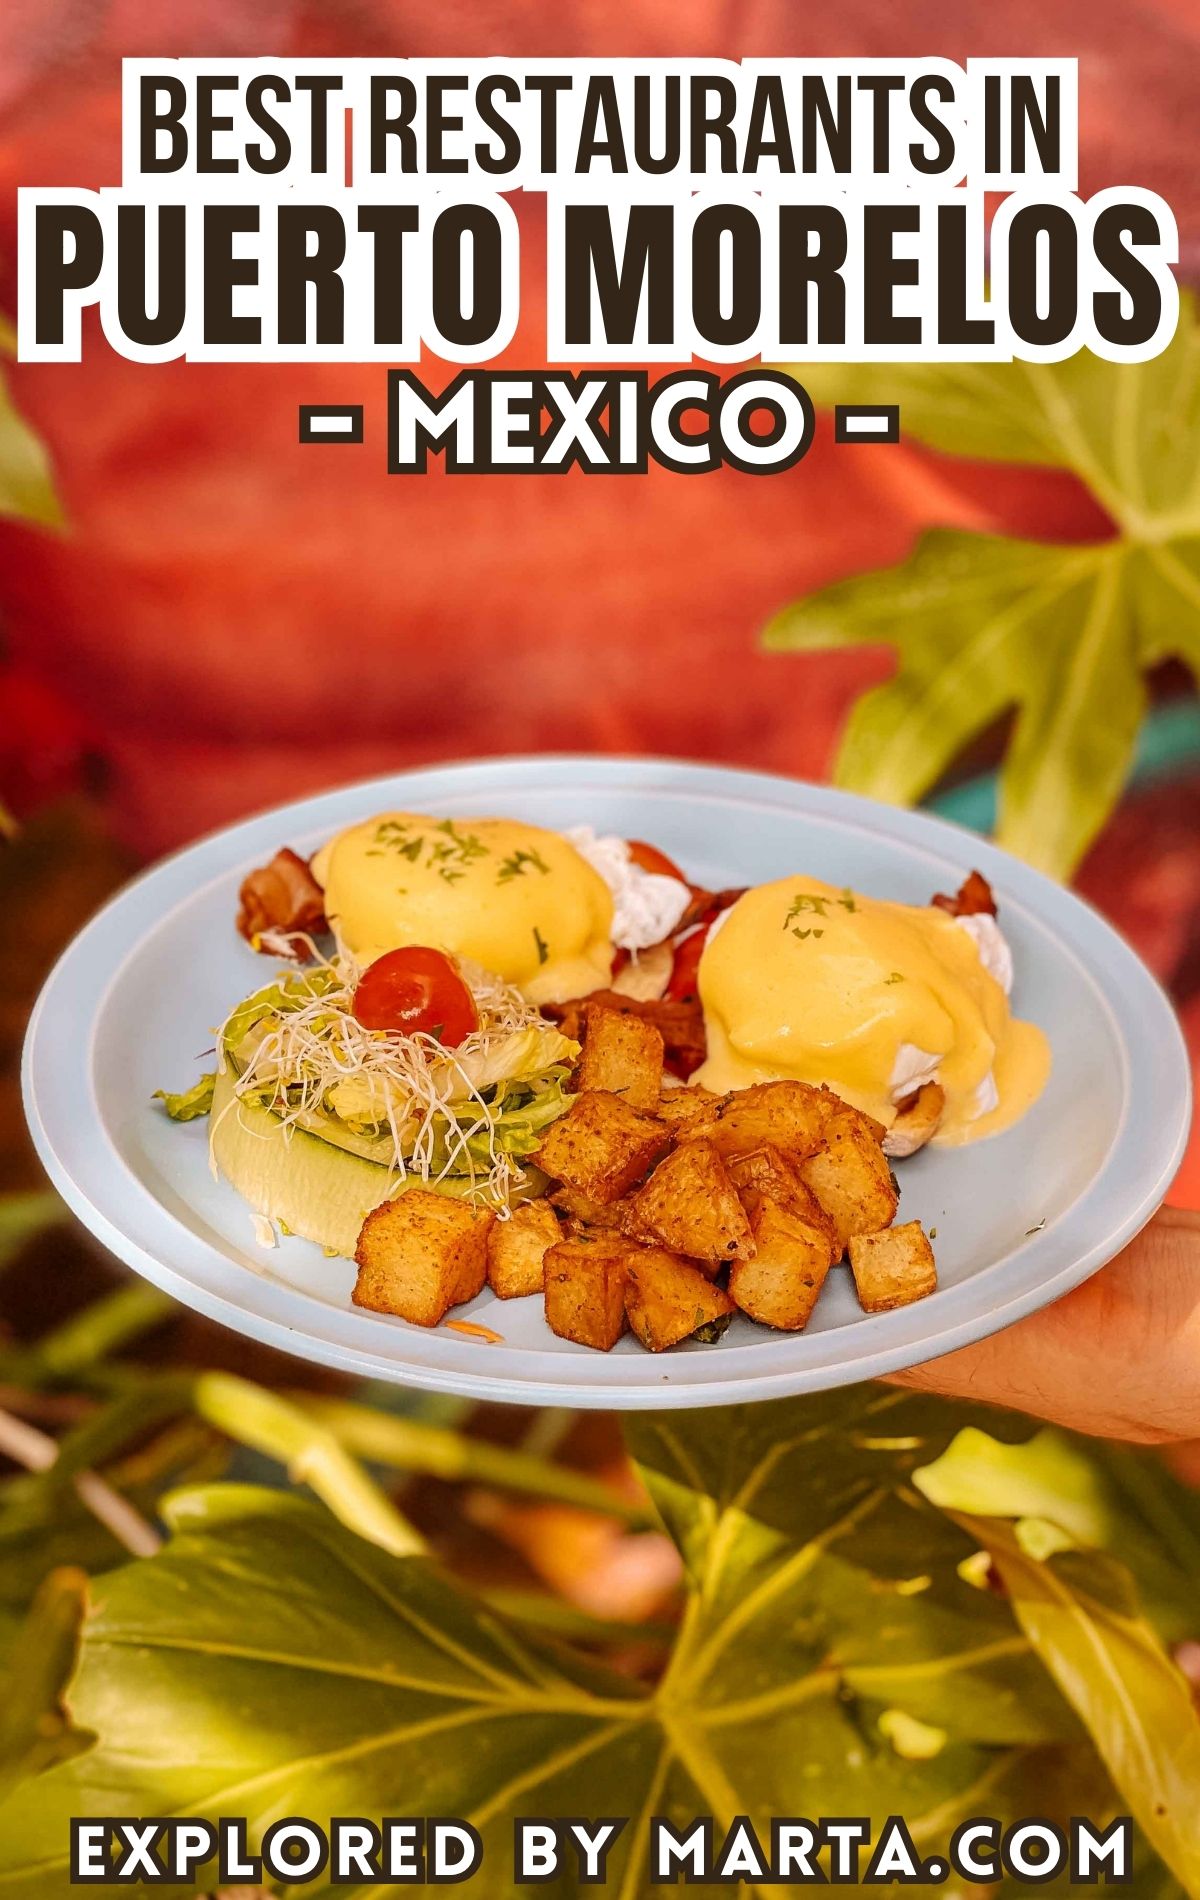 Top restaurants in Puerto Morelos, Mexico